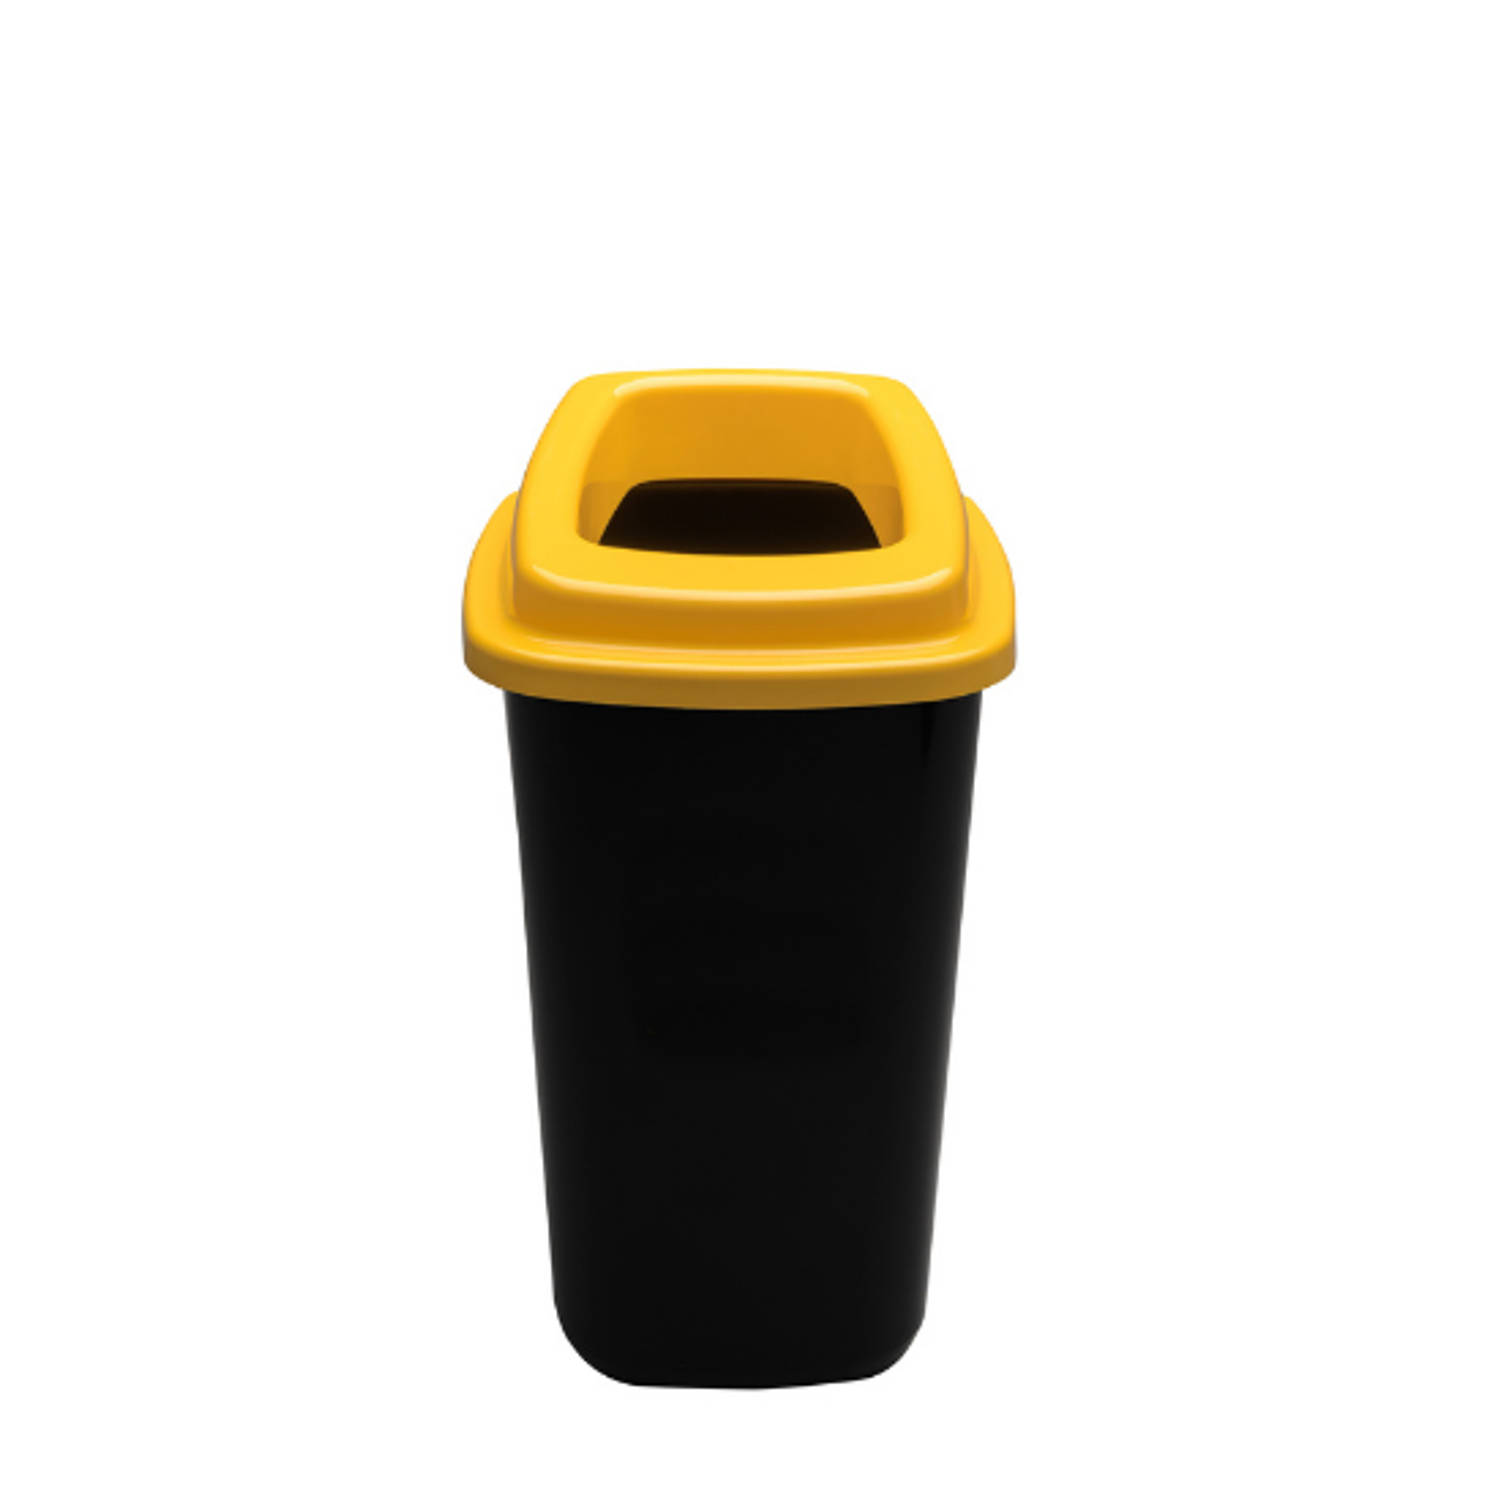 Plafor Prullenbak 45L, gemakkelijk afval recyclen – afval scheiden, afvalbakken, vuilnisbak,